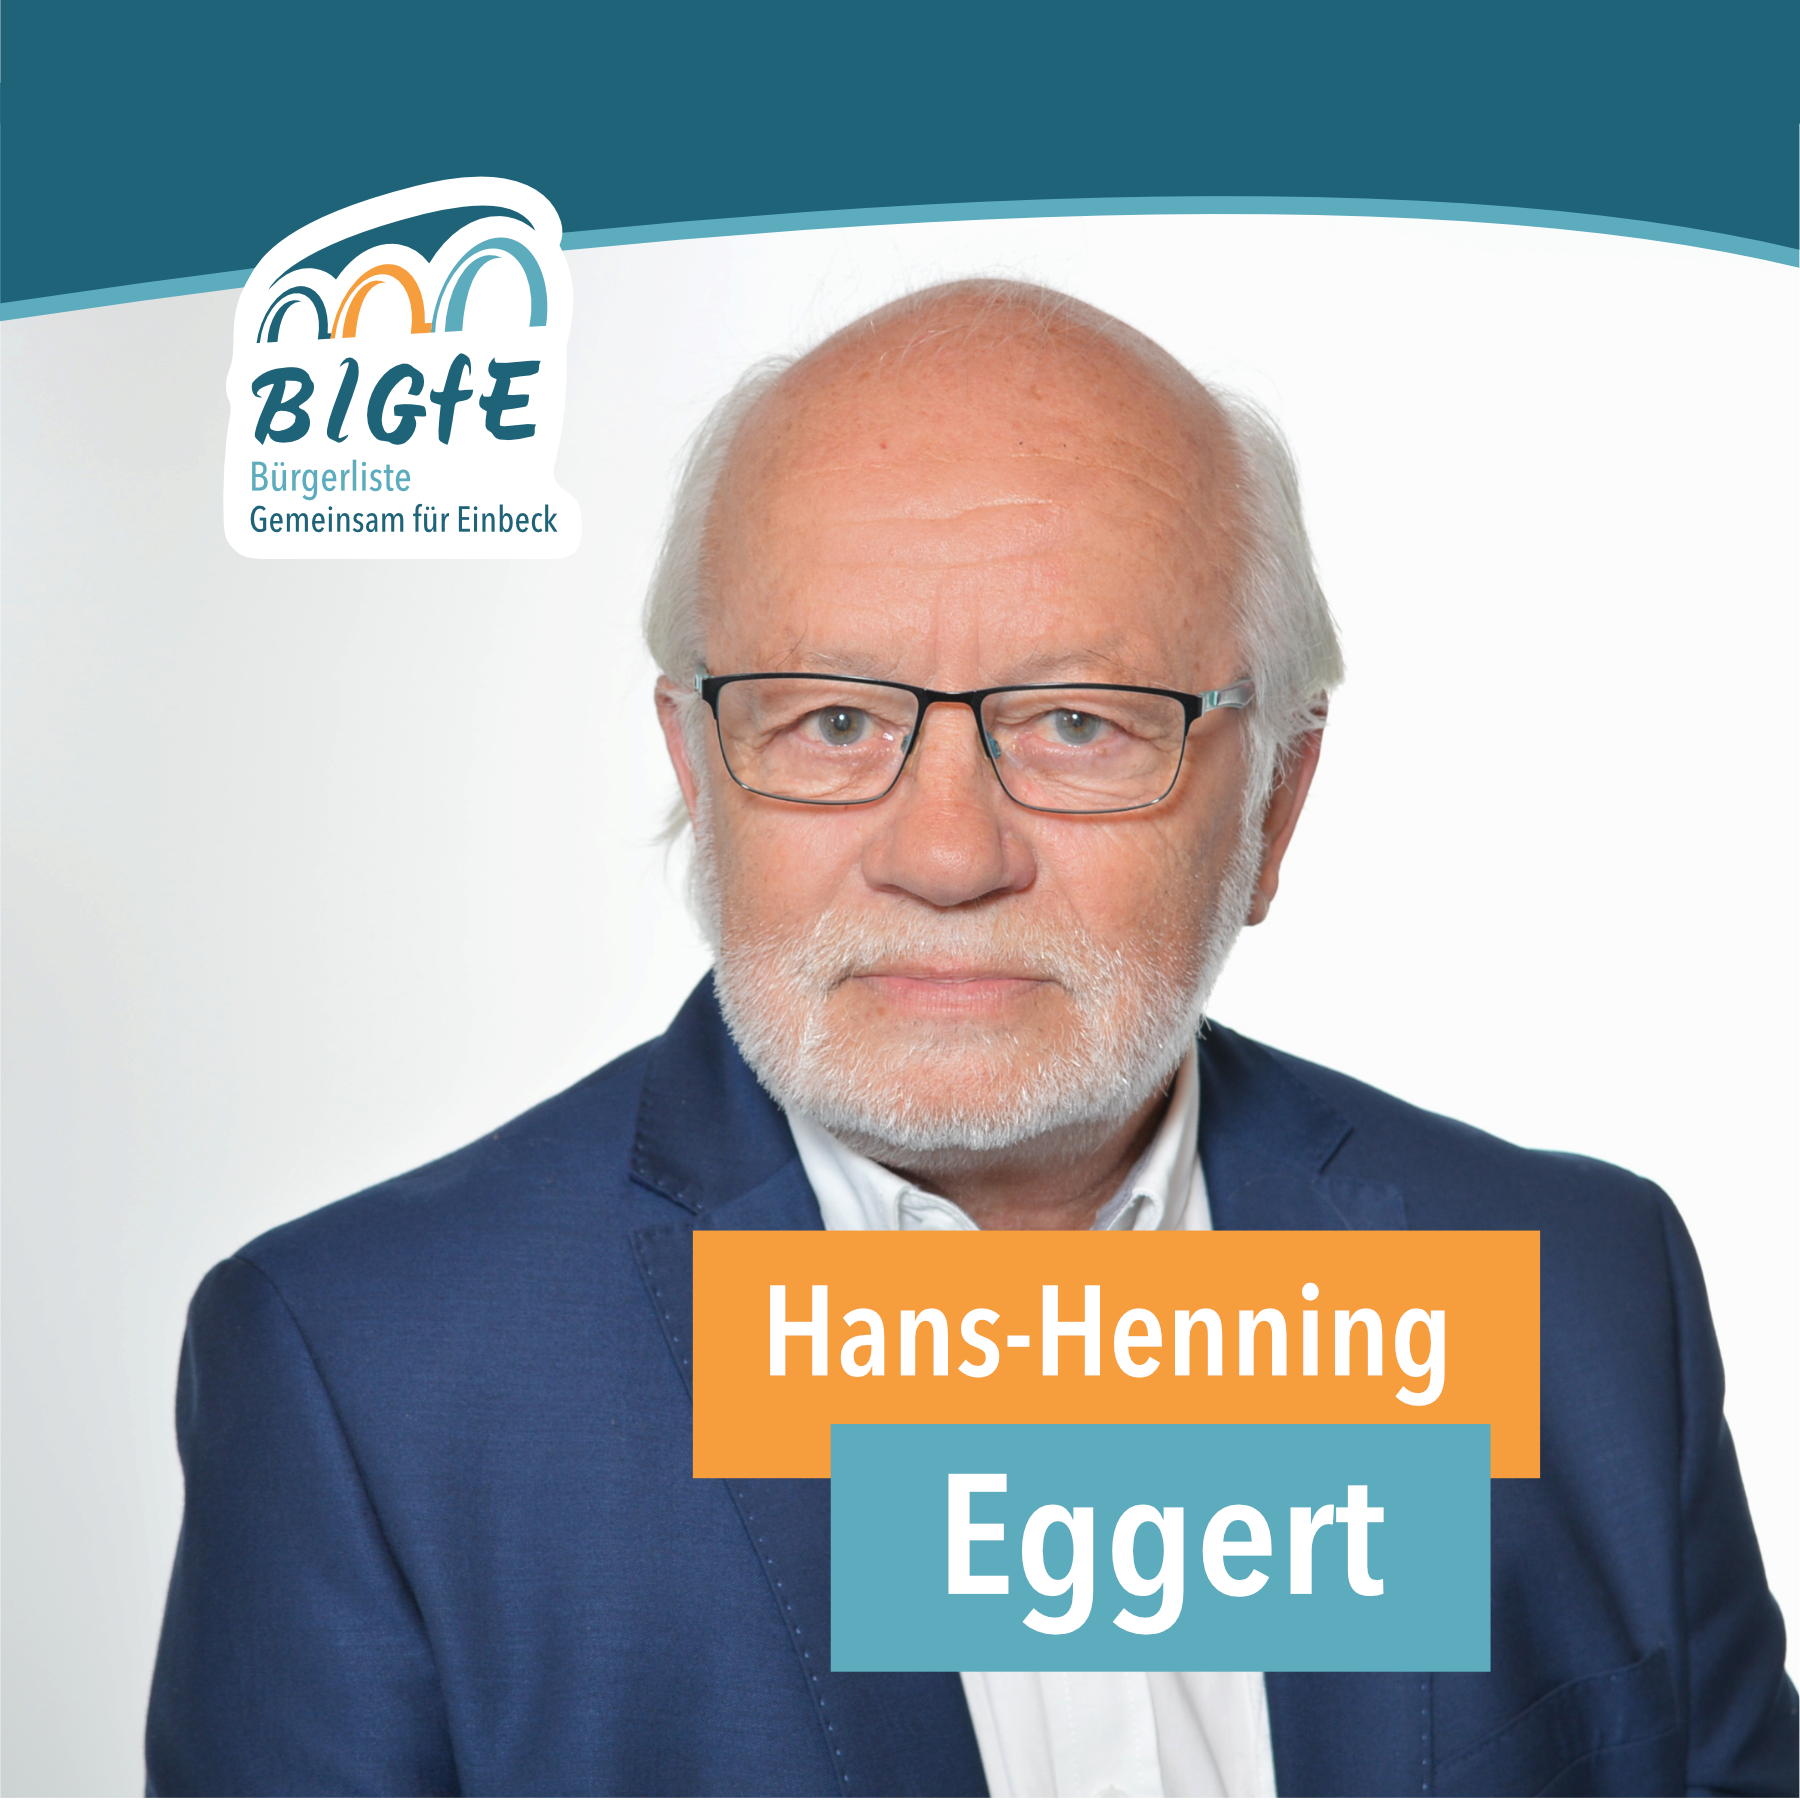 Hans-Henning Eggert